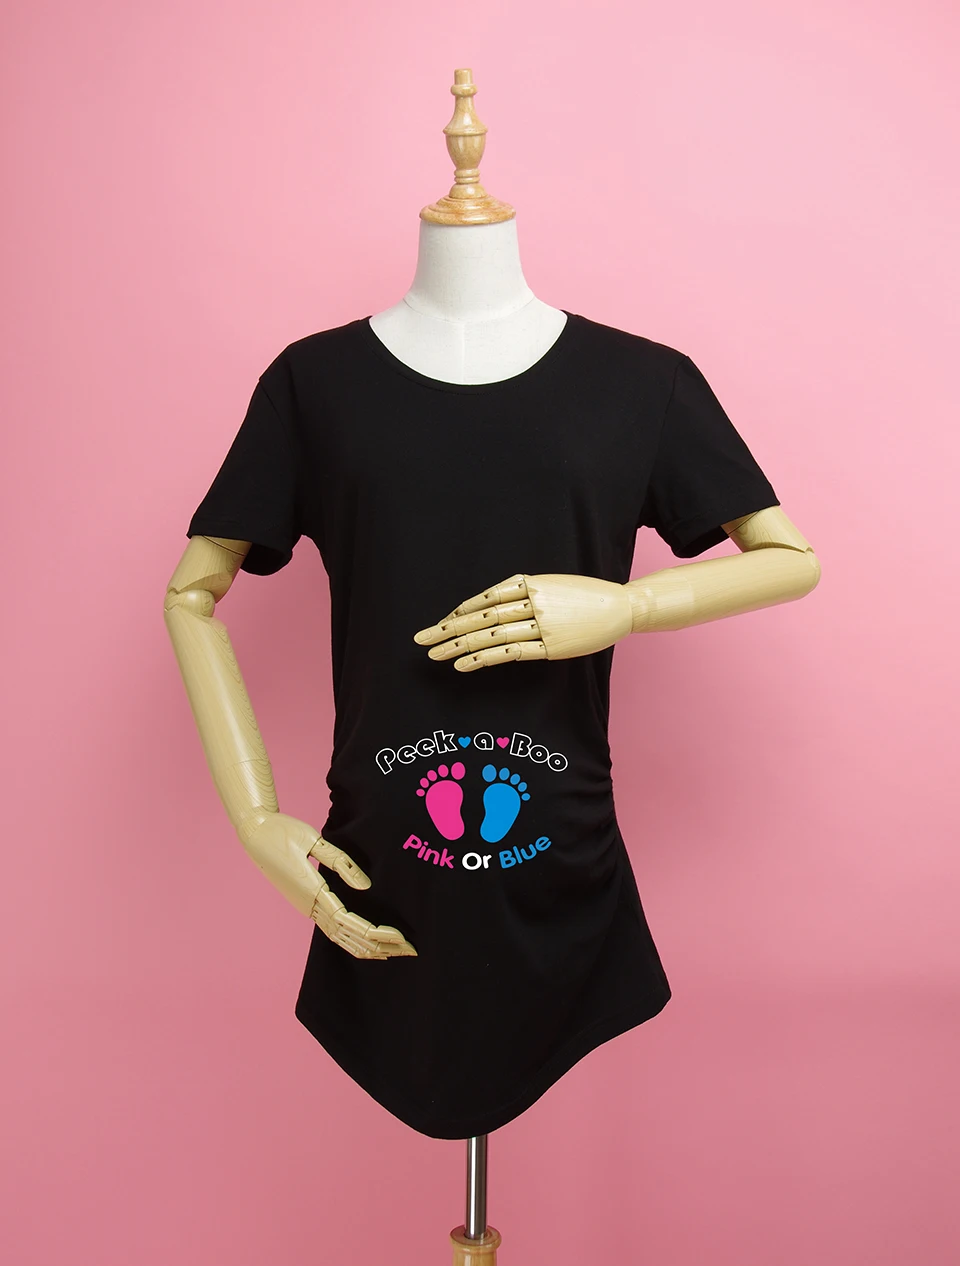 "Розовый или Голубой" значит, мальчик или девочка Рубашка Материнства 100% Хлопок Материнства Одежда для беременных женщин Плюс Размер XXL Бесплатная Доставка